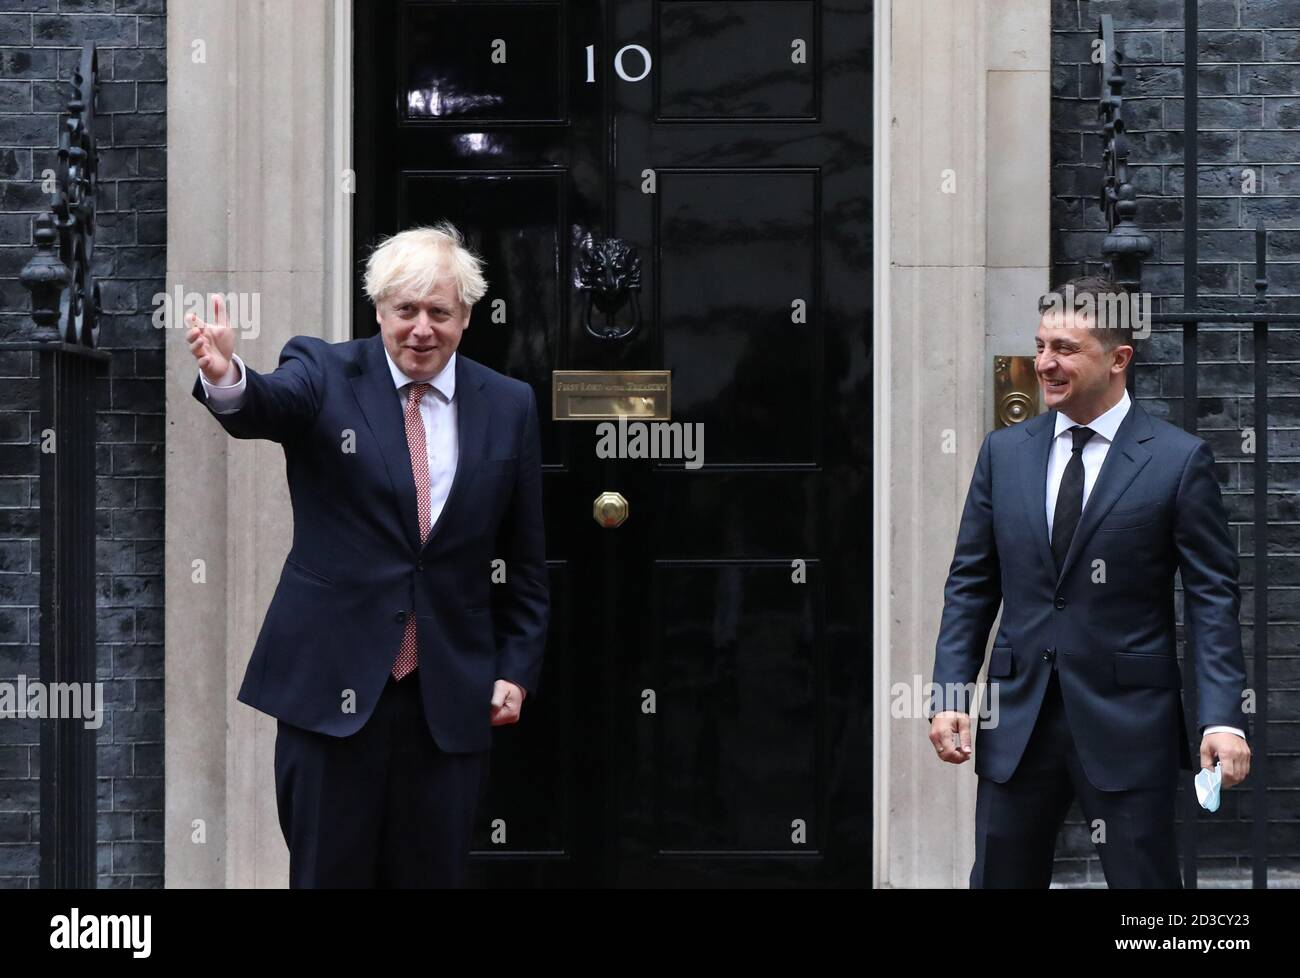 Le Premier ministre Boris Johnson (à gauche) souhaite la bienvenue au président ukrainien, Volodymyr Zelenskyy, à Downing Street , Londres, avant une réunion pour signer un accord de partenariat stratégique avec le président, face au « comportement de la Russie envers le pays ». Banque D'Images